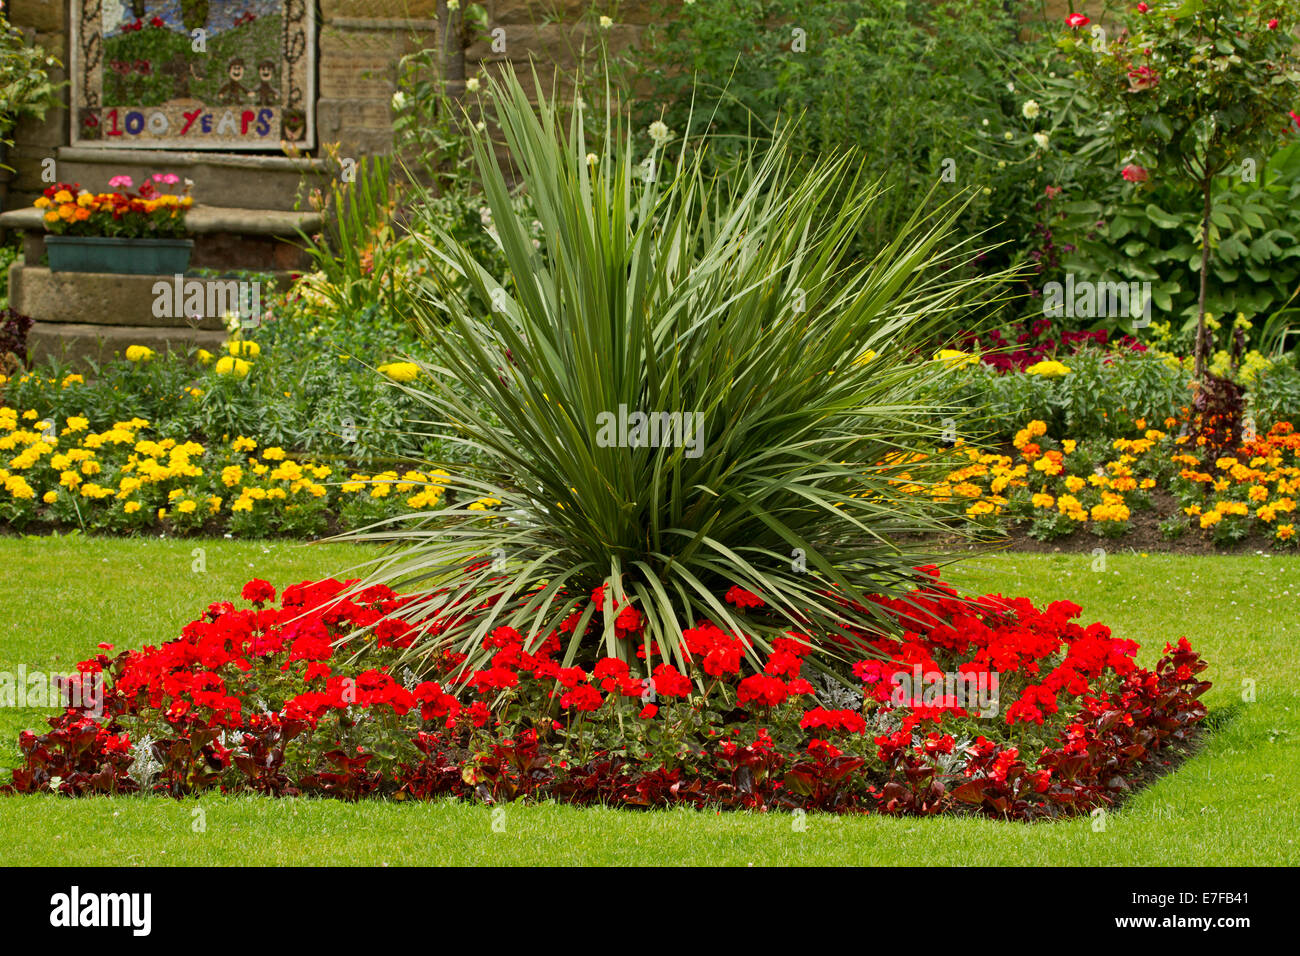 Bunter Frühling Anzeige der leuchtend roten und gelben Blüten von einjährigen Pflanzen in rechteckige Beete in Bad Gärten, Bakewell, England Stockfoto